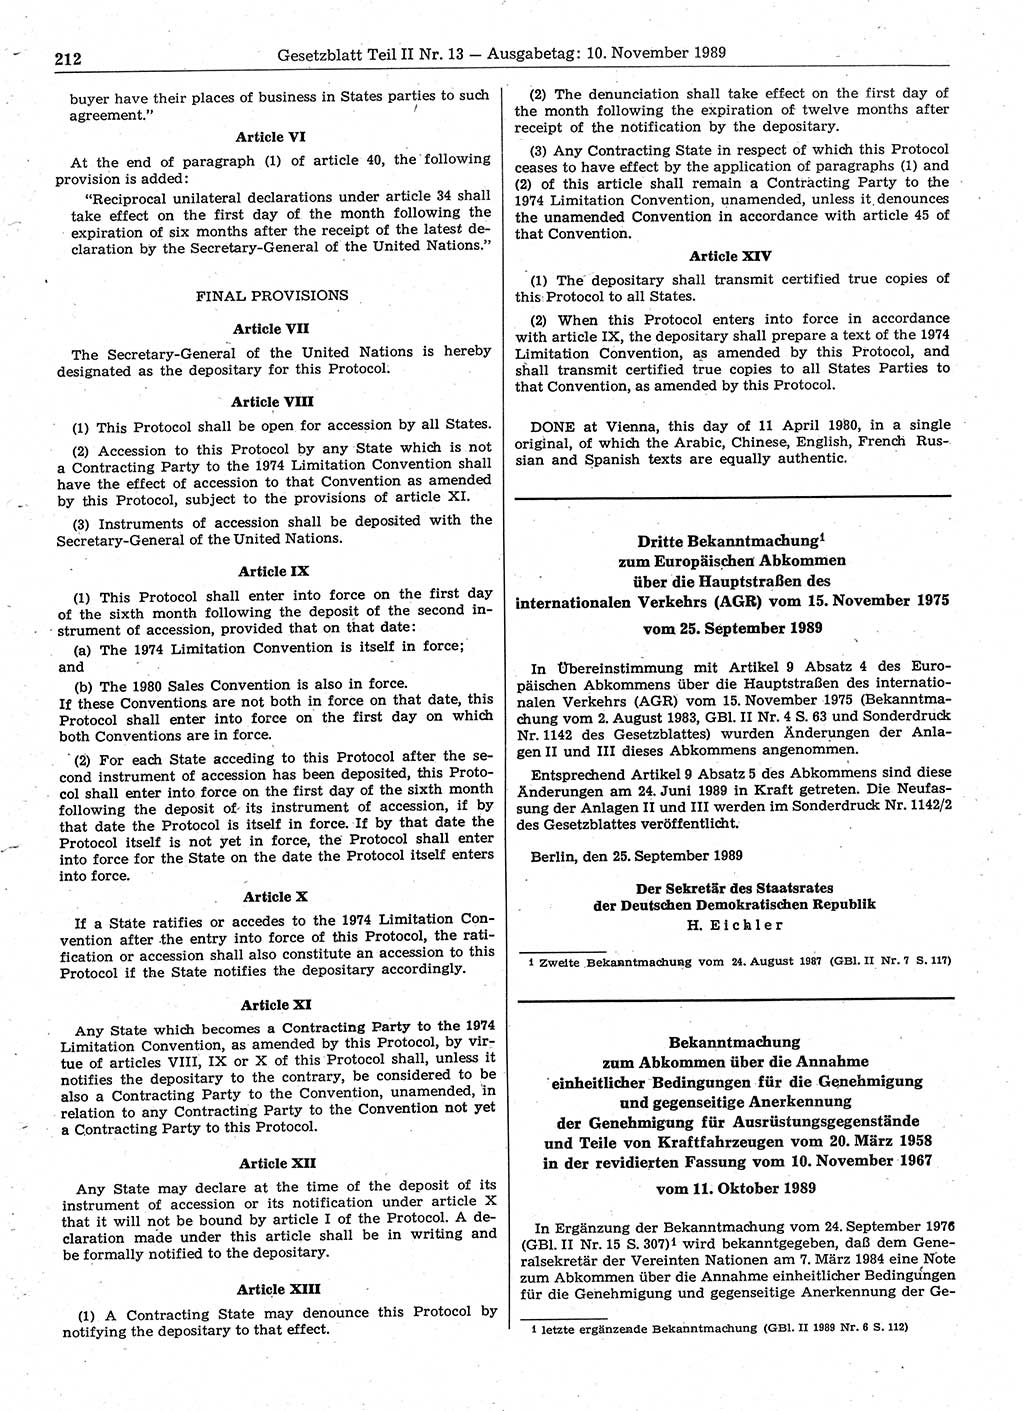 Gesetzblatt (GBl.) der Deutschen Demokratischen Republik (DDR) Teil ⅠⅠ 1989, Seite 212 (GBl. DDR ⅠⅠ 1989, S. 212)